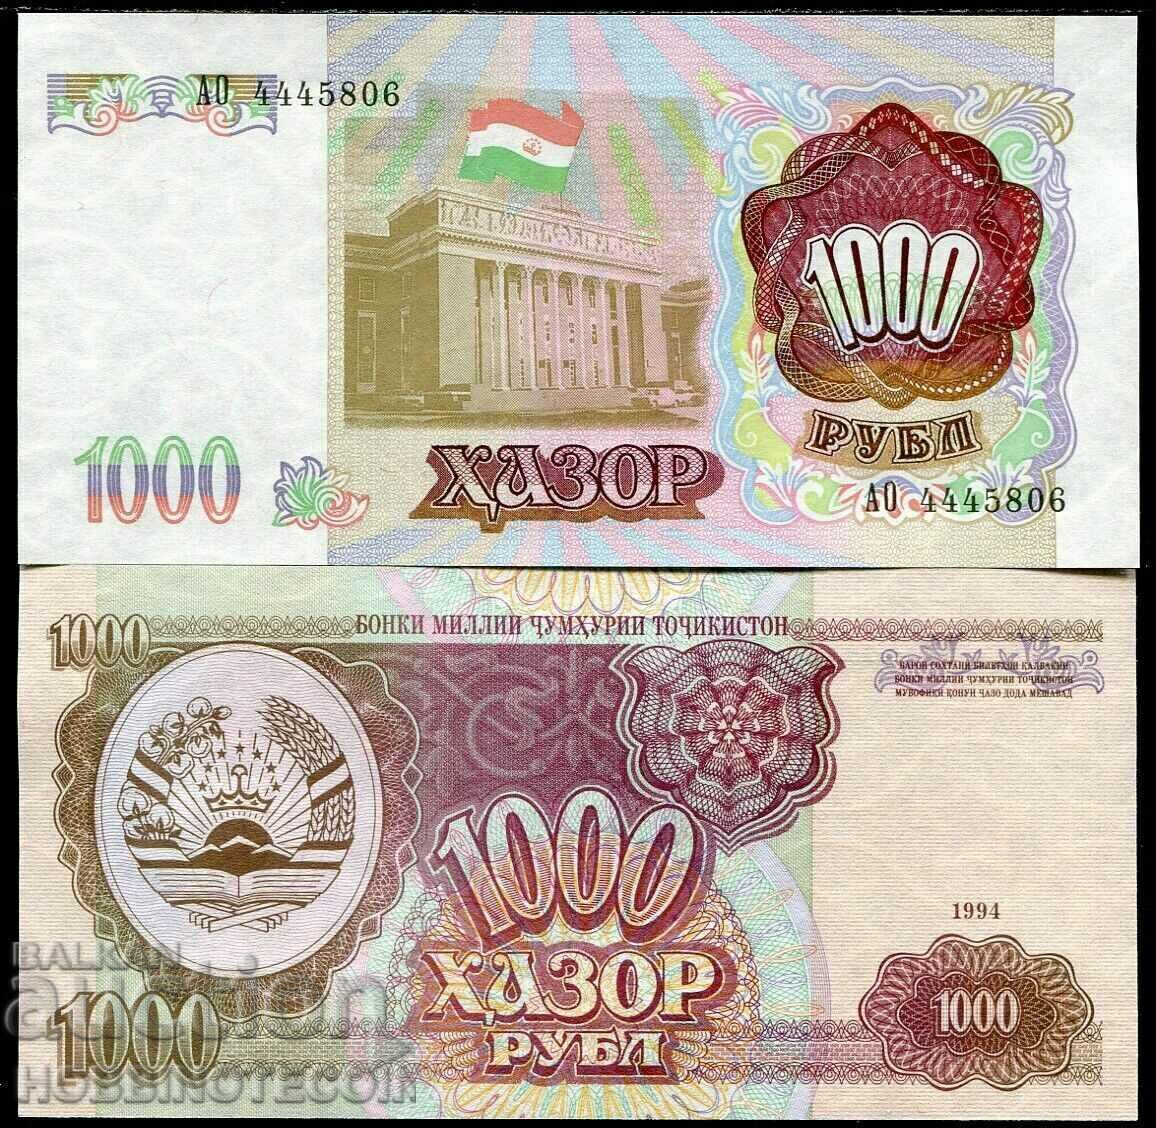 TAJIKISTAN TAJIKISTAN 1000 Rubles issue 1994 NEW UNC